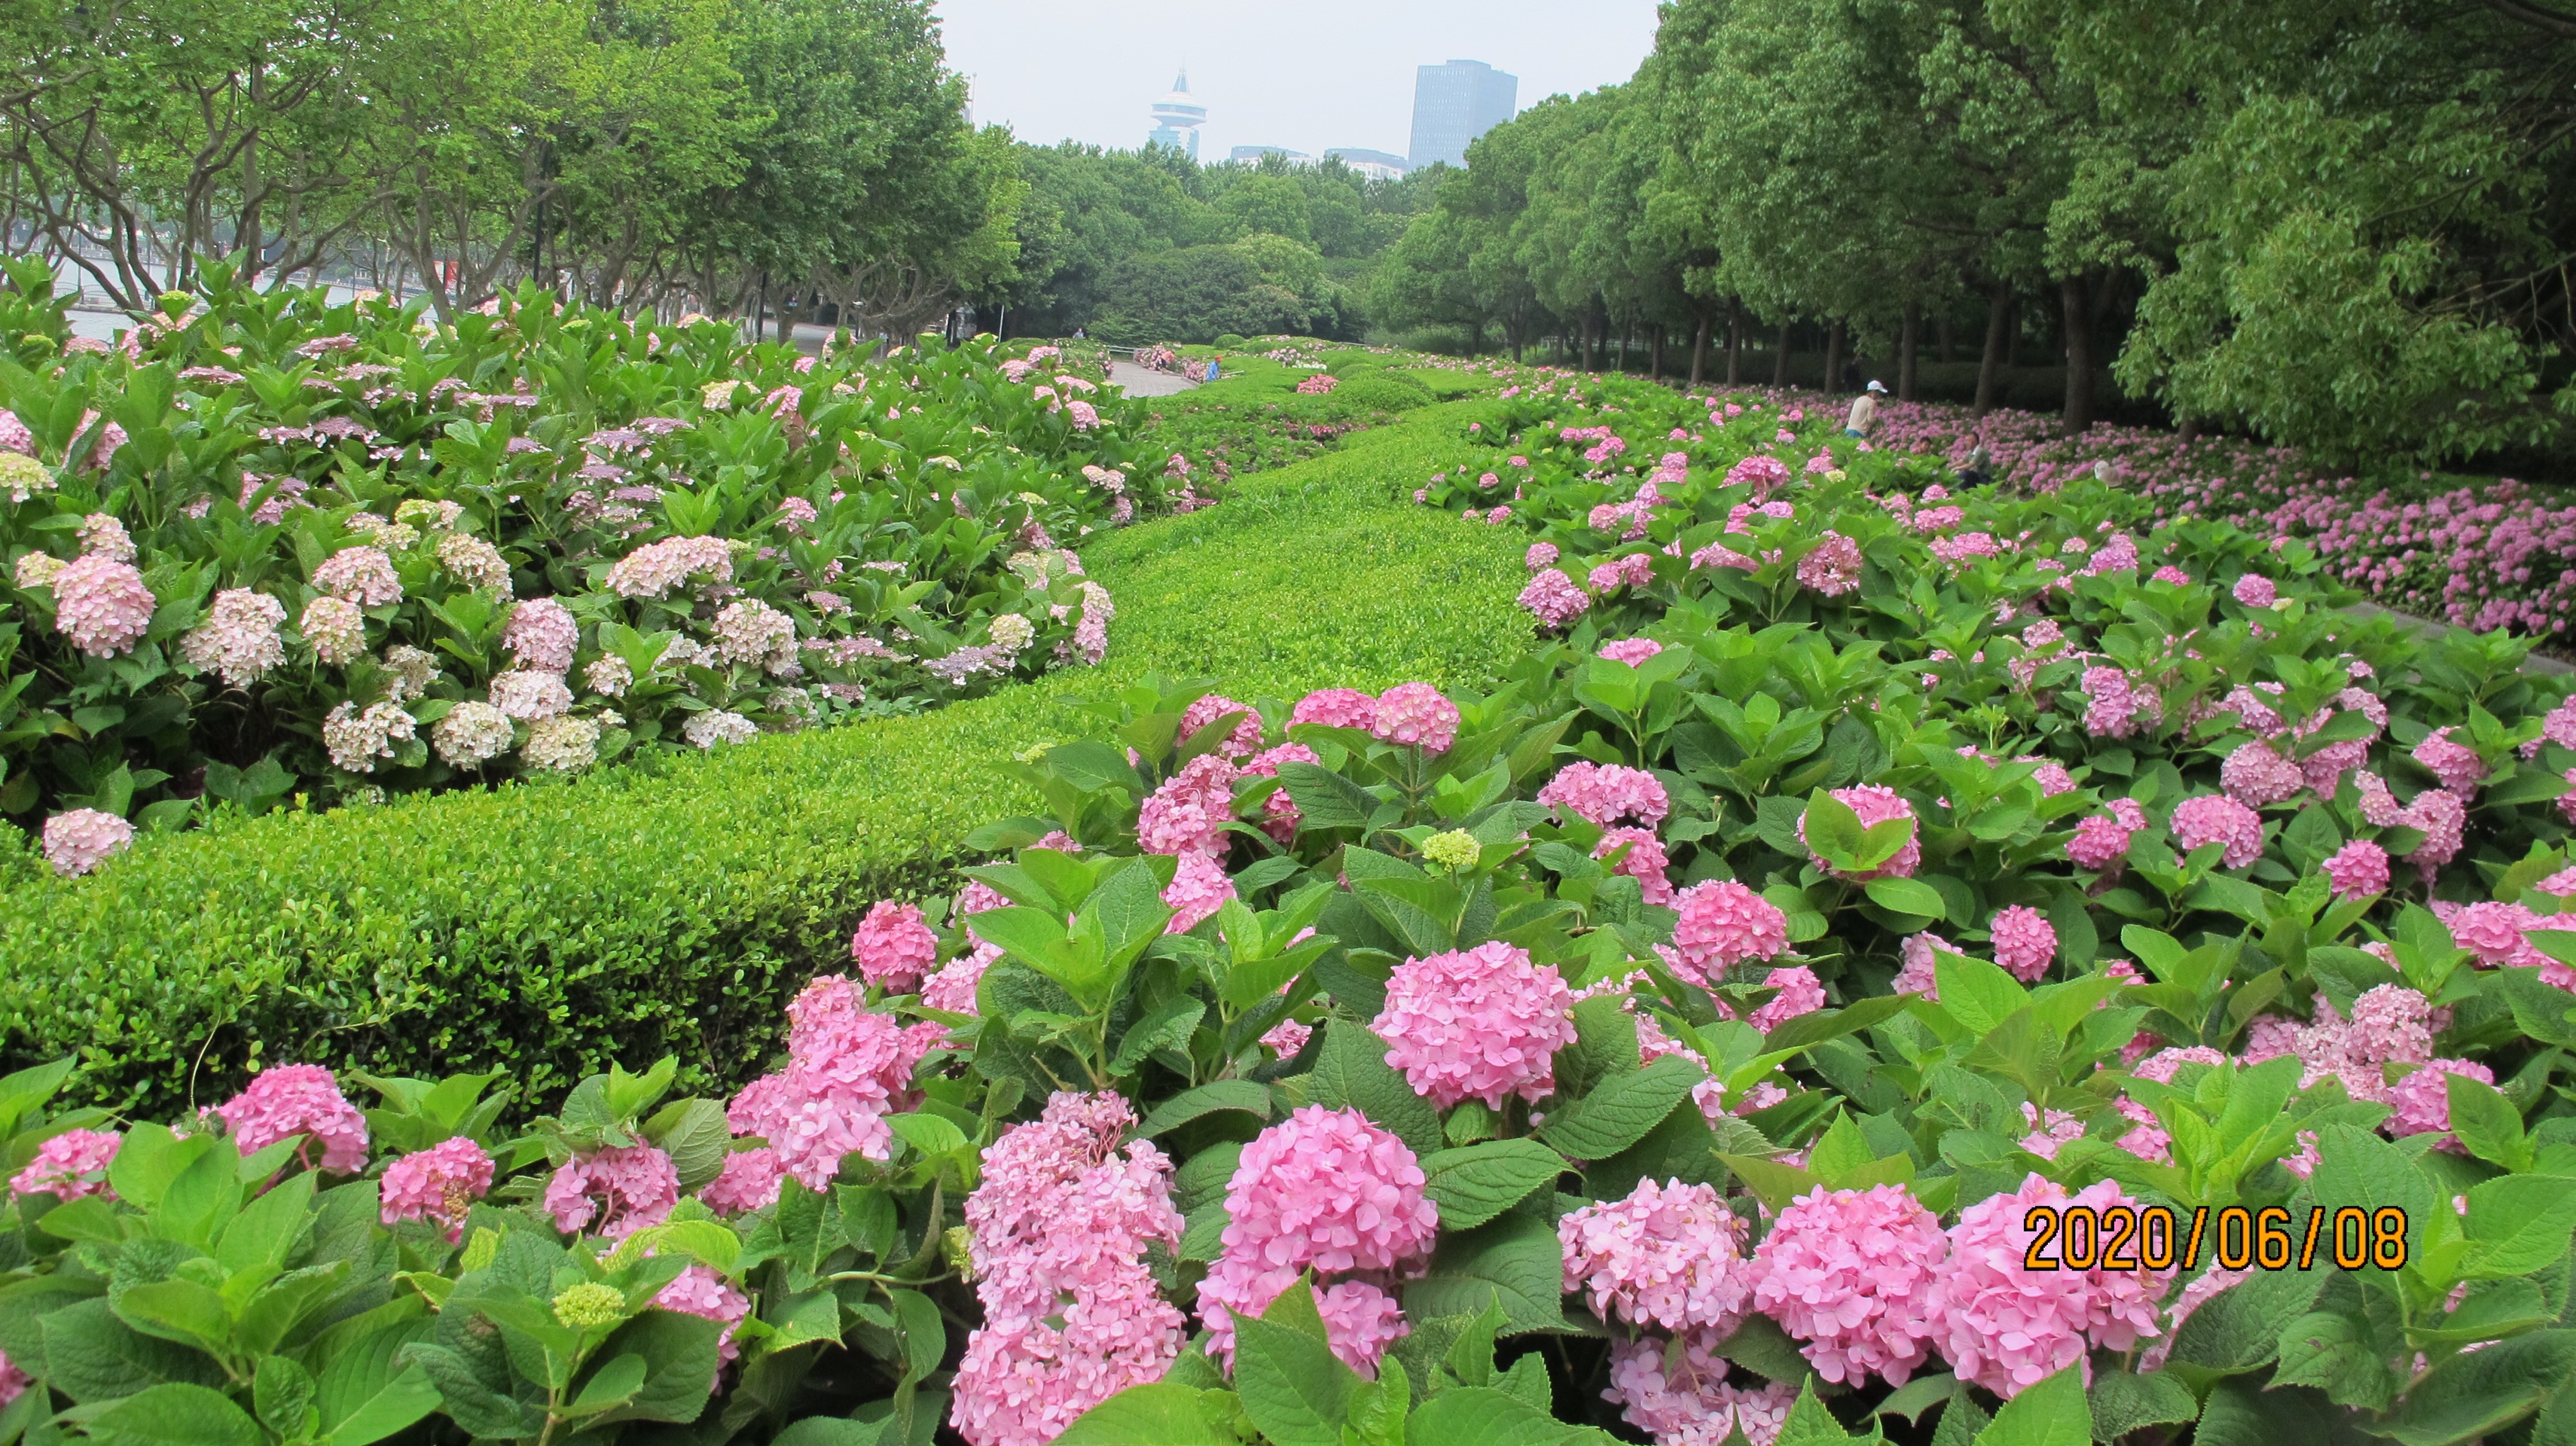 不用去镰仓家门口的绣球花也可以这么好看-上海世纪公园